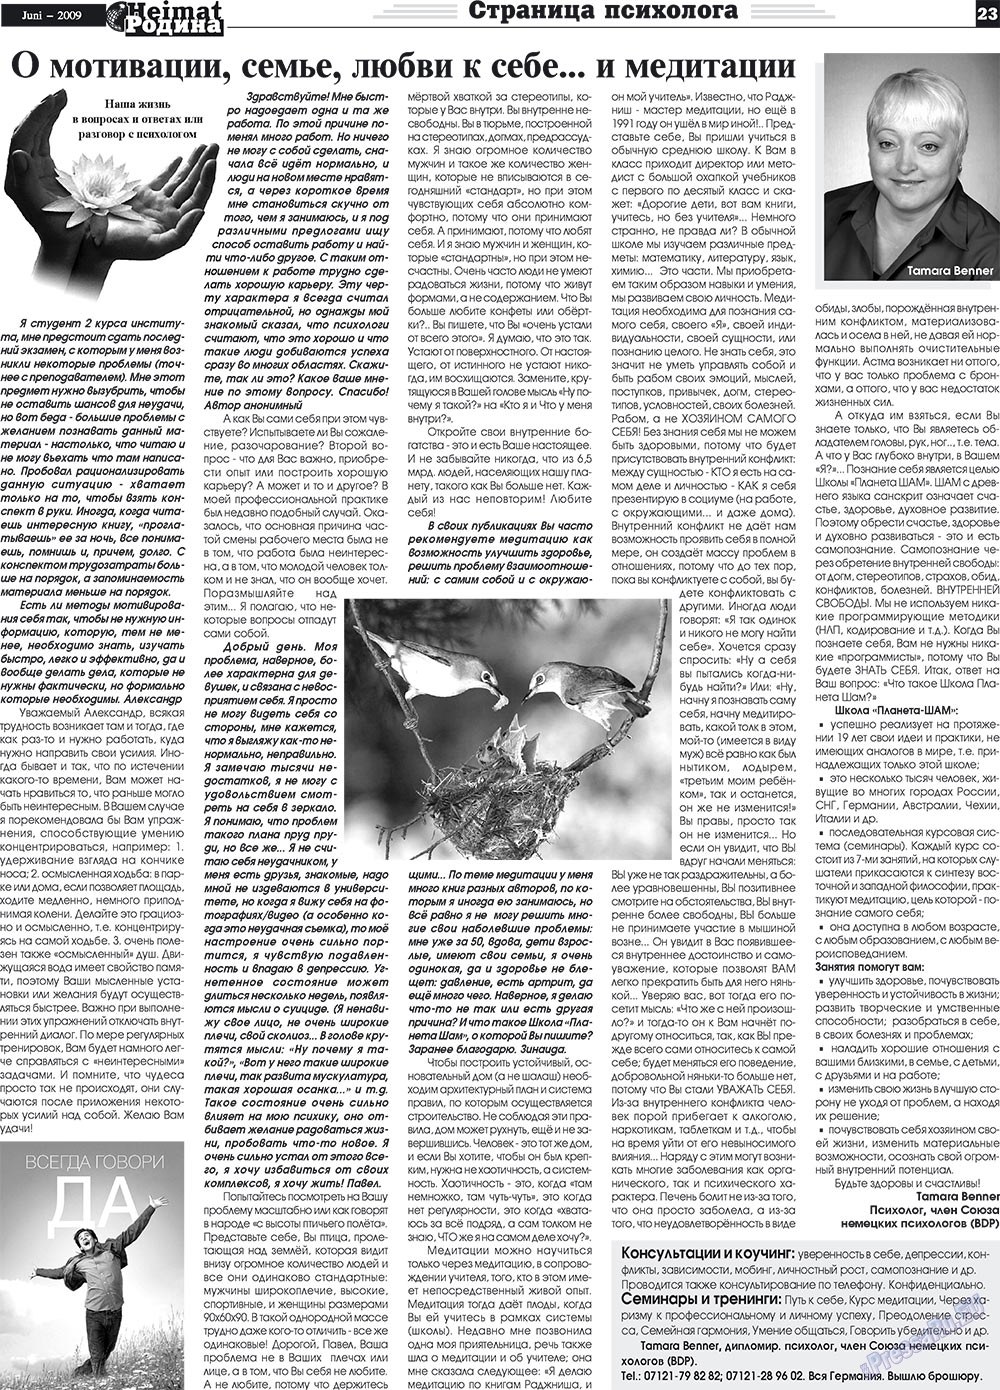 Heimat-Родина (газета). 2009 год, номер 6, стр. 23